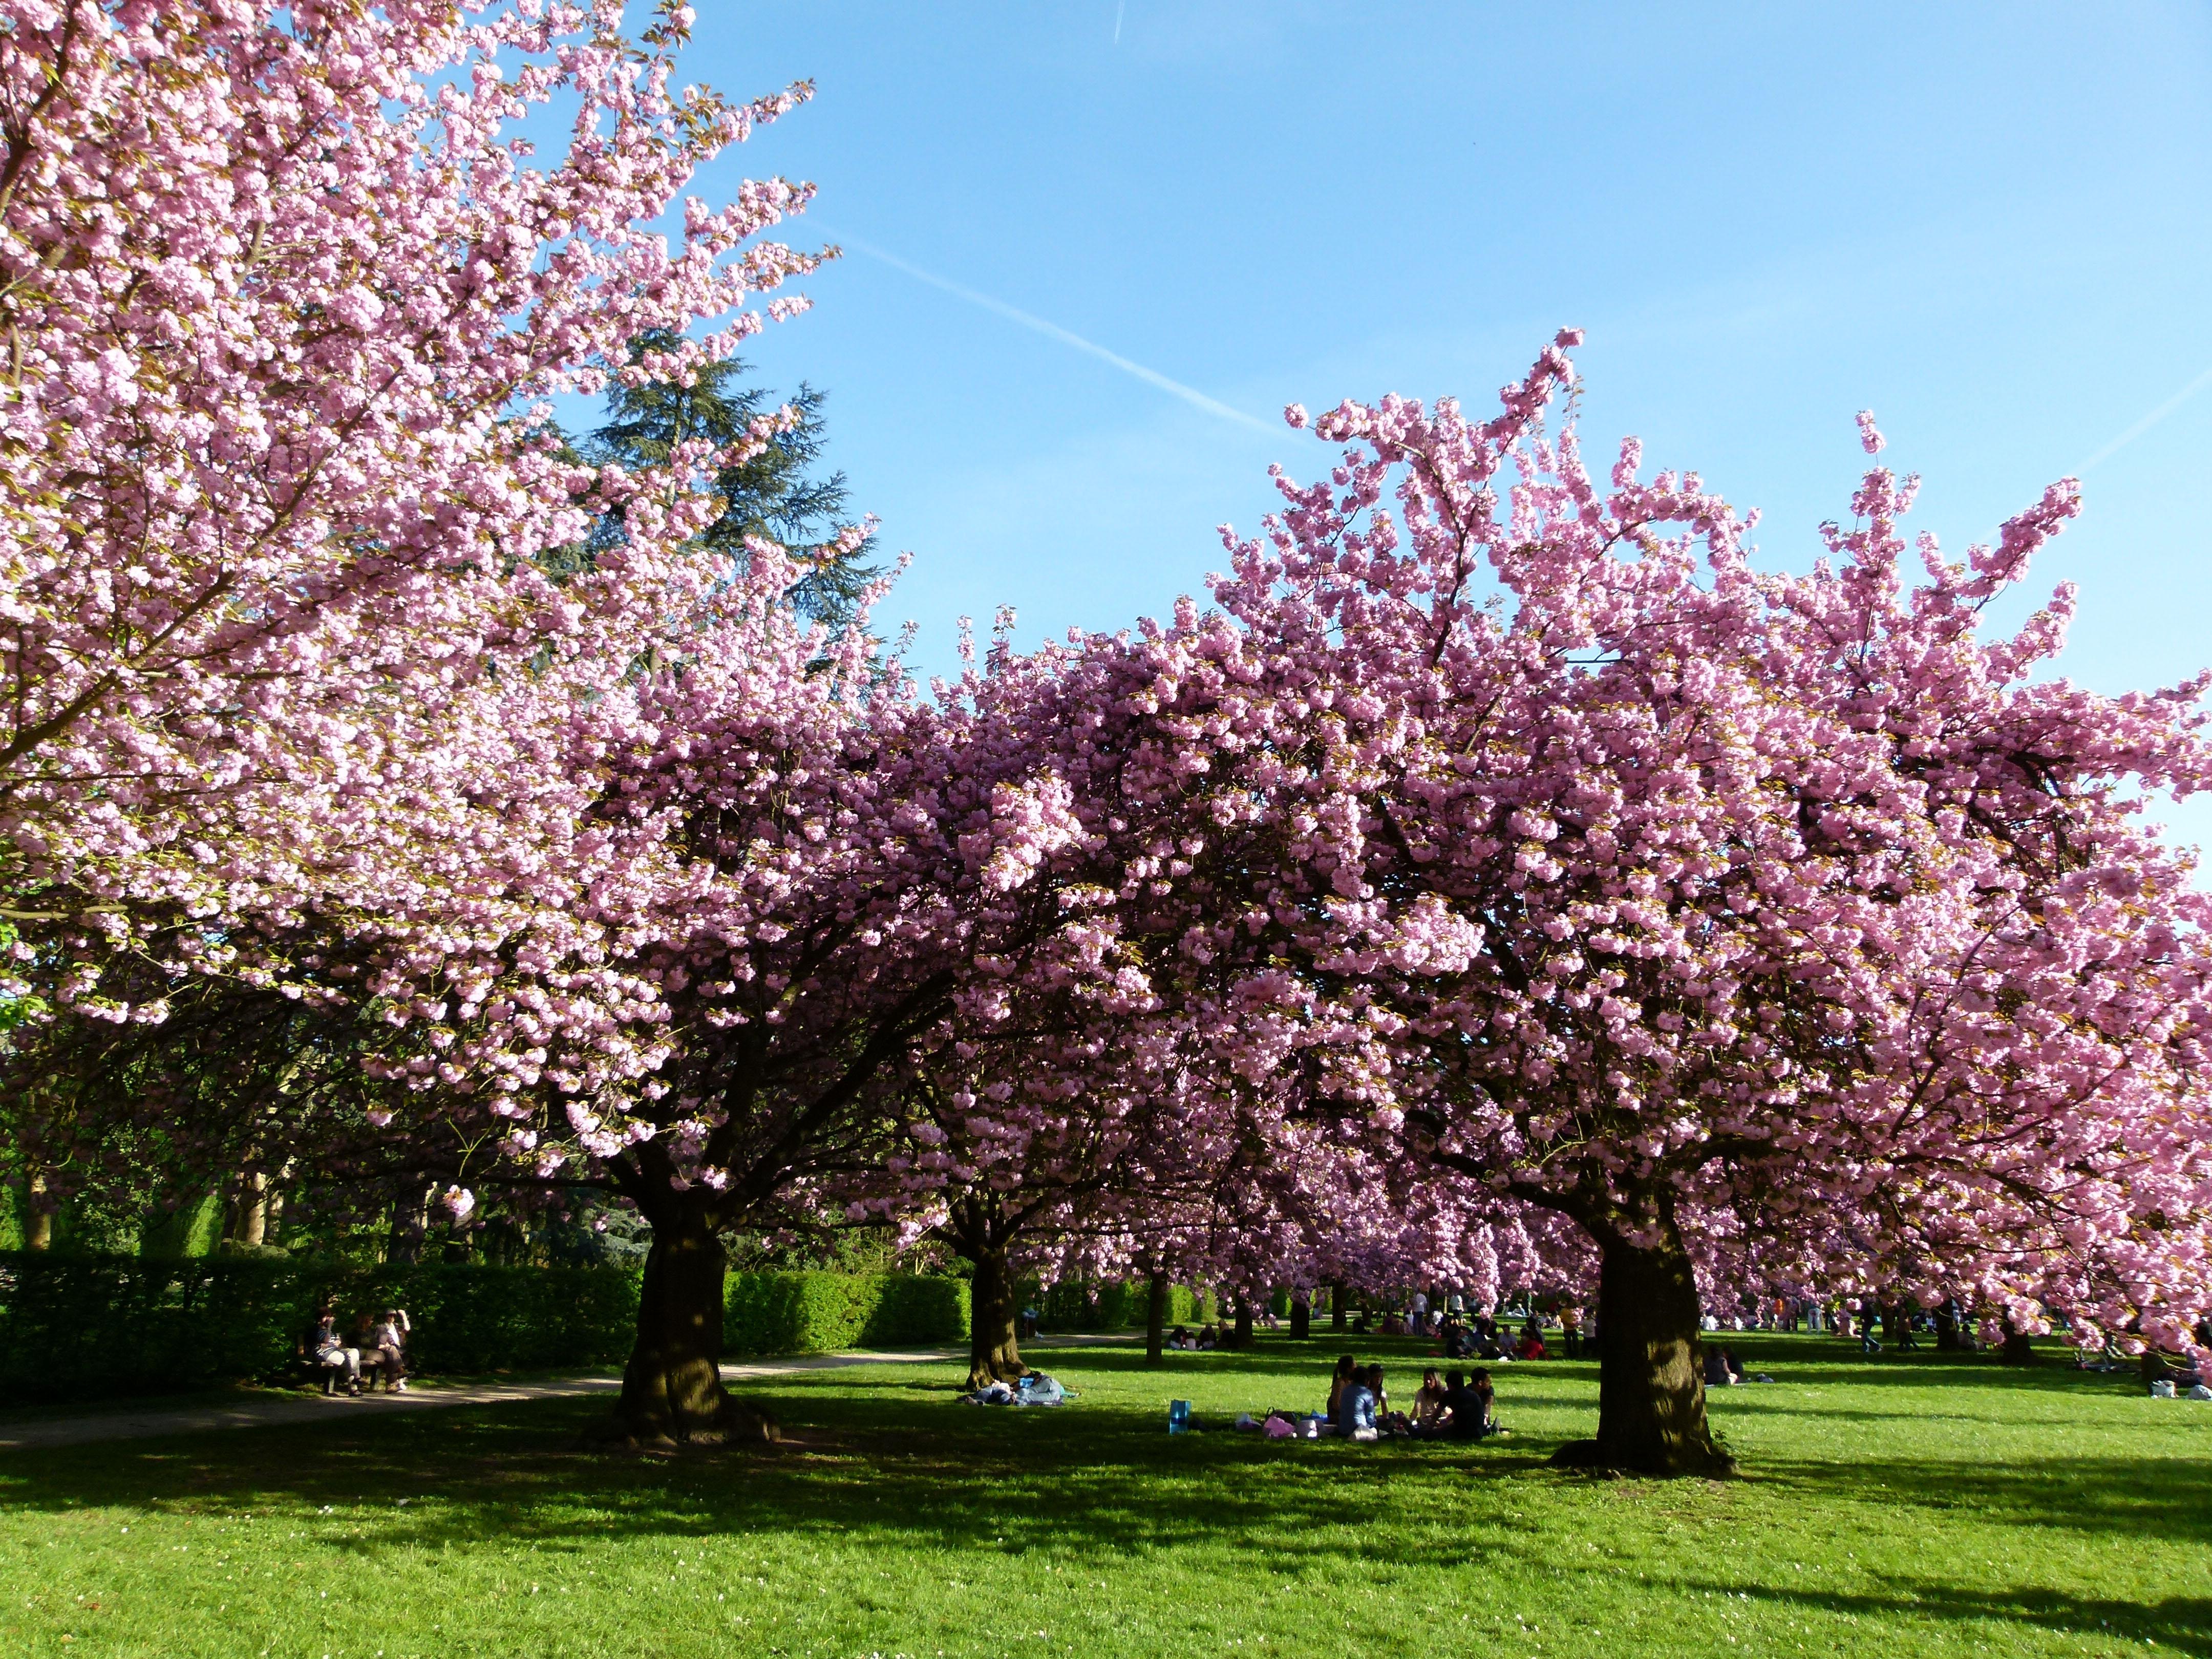 Le Parc de Sceaux célèbre les cerisiers en fleurs